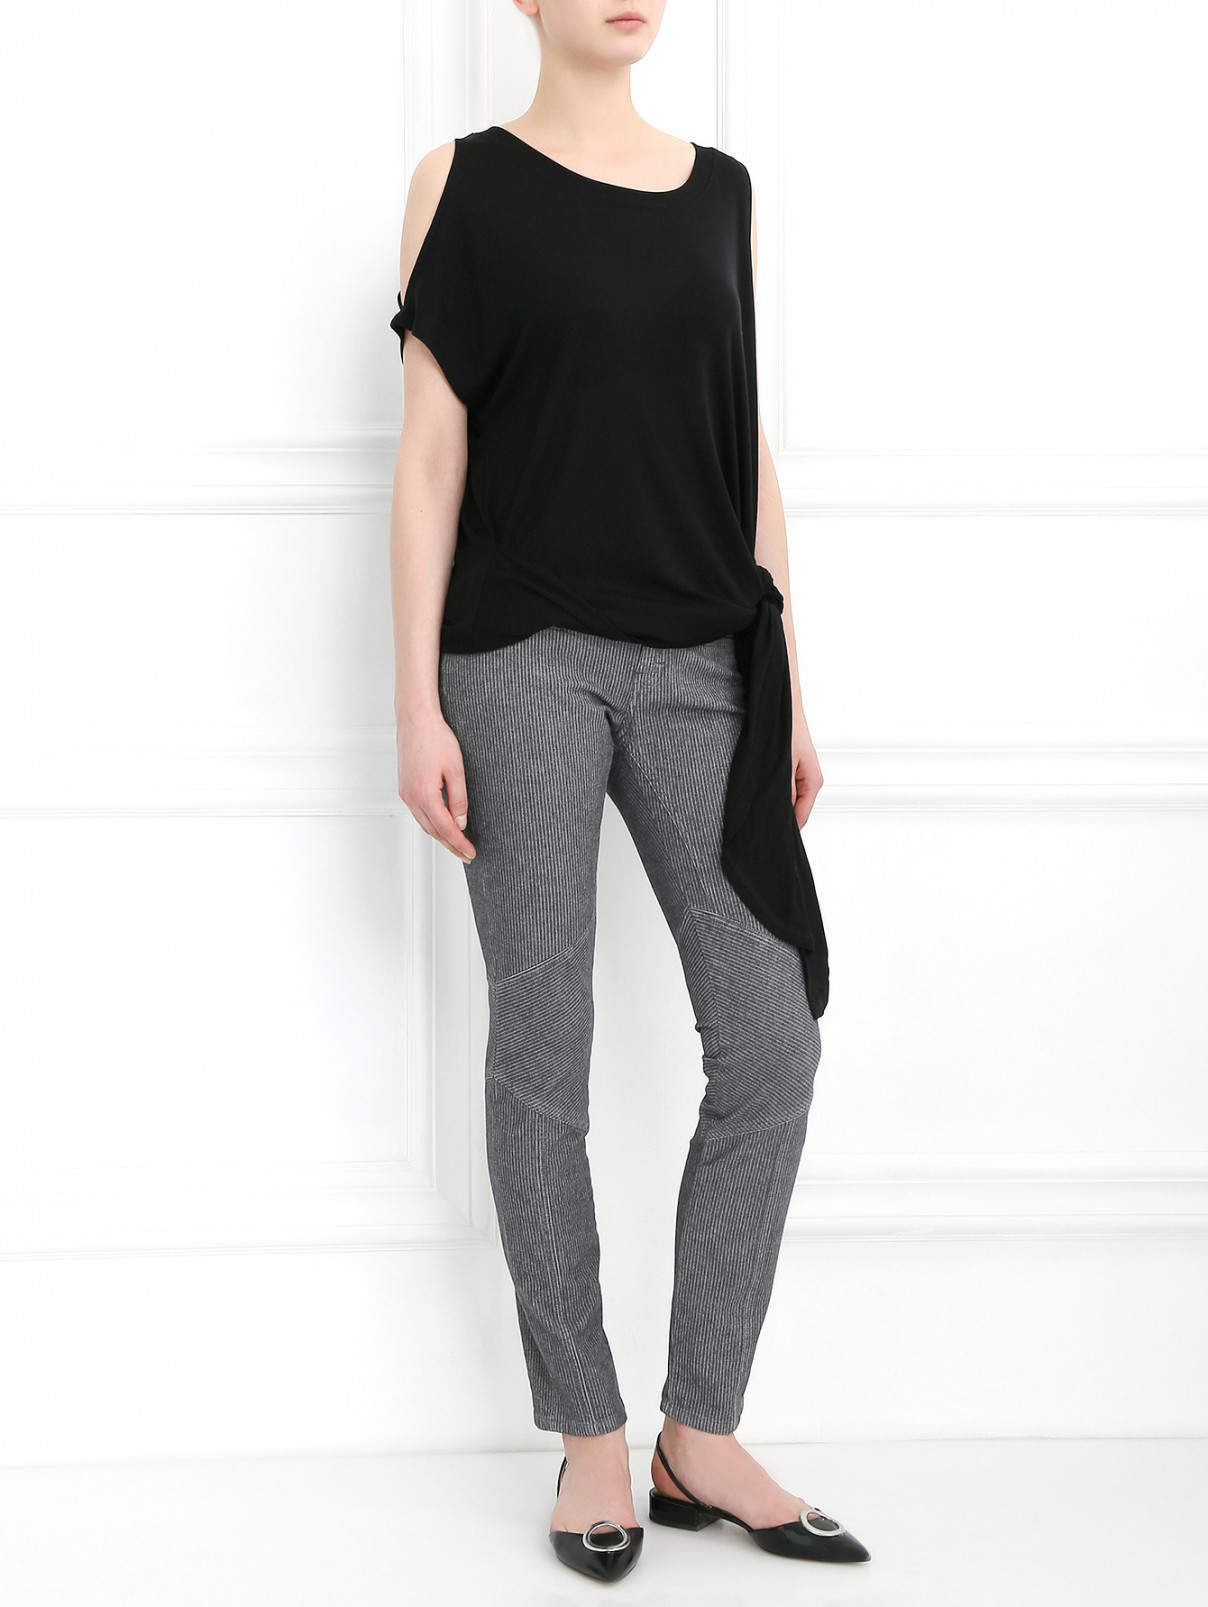 Узкие брюки с узором "полоска" Athe Vanessa Bruno  –  Модель Общий вид  – Цвет:  Серый